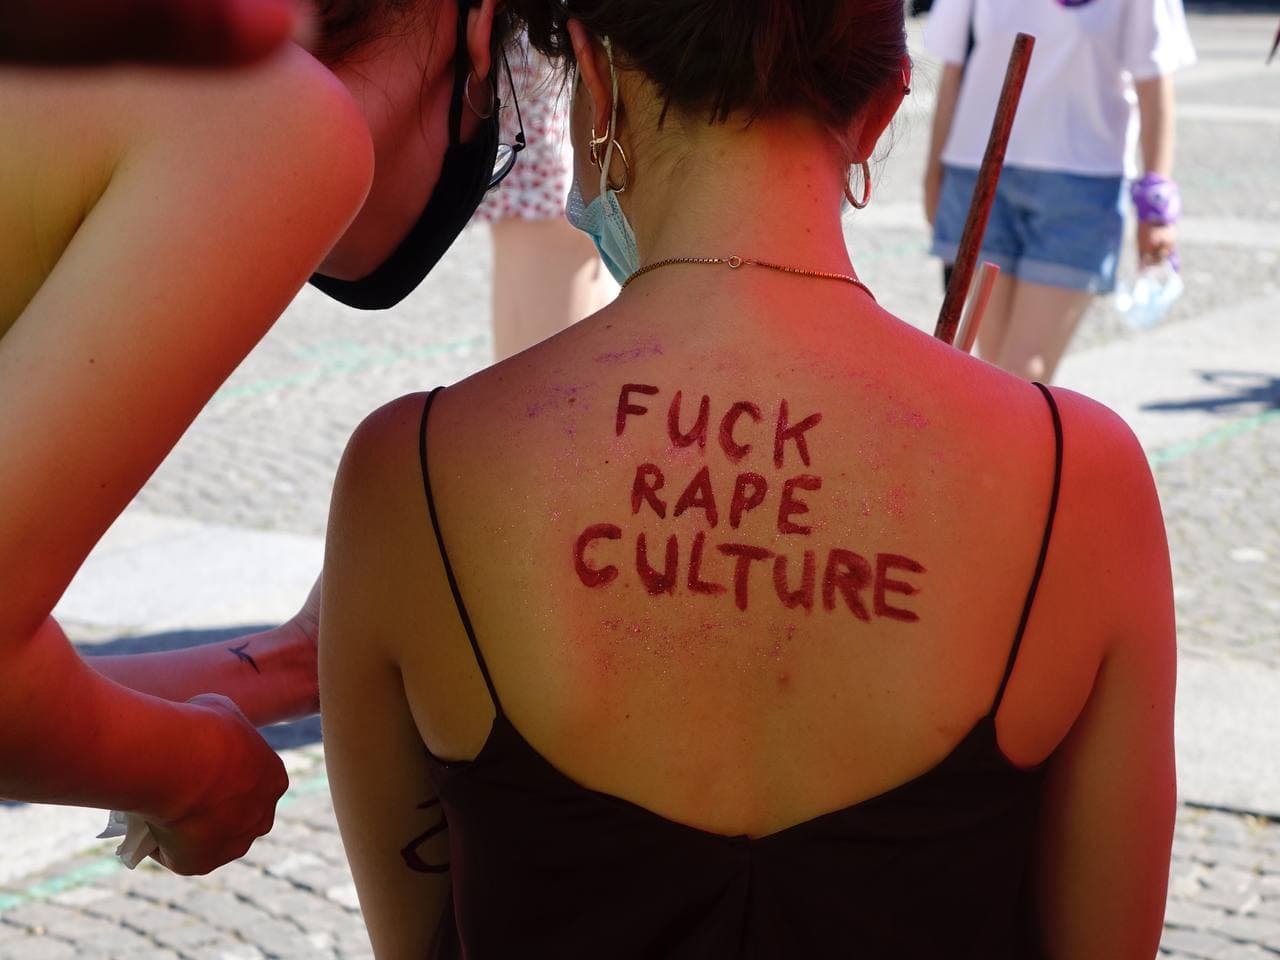 Foto des Oberkörpers einer Person von hinten, welche ein Träger-Shirt trägt. auf ihrem Freien Rücken steht mit rot und glitzer "Fuck rape culture" eine weitere Person bückt sich zu ihr herunter und zeigt ihr was.